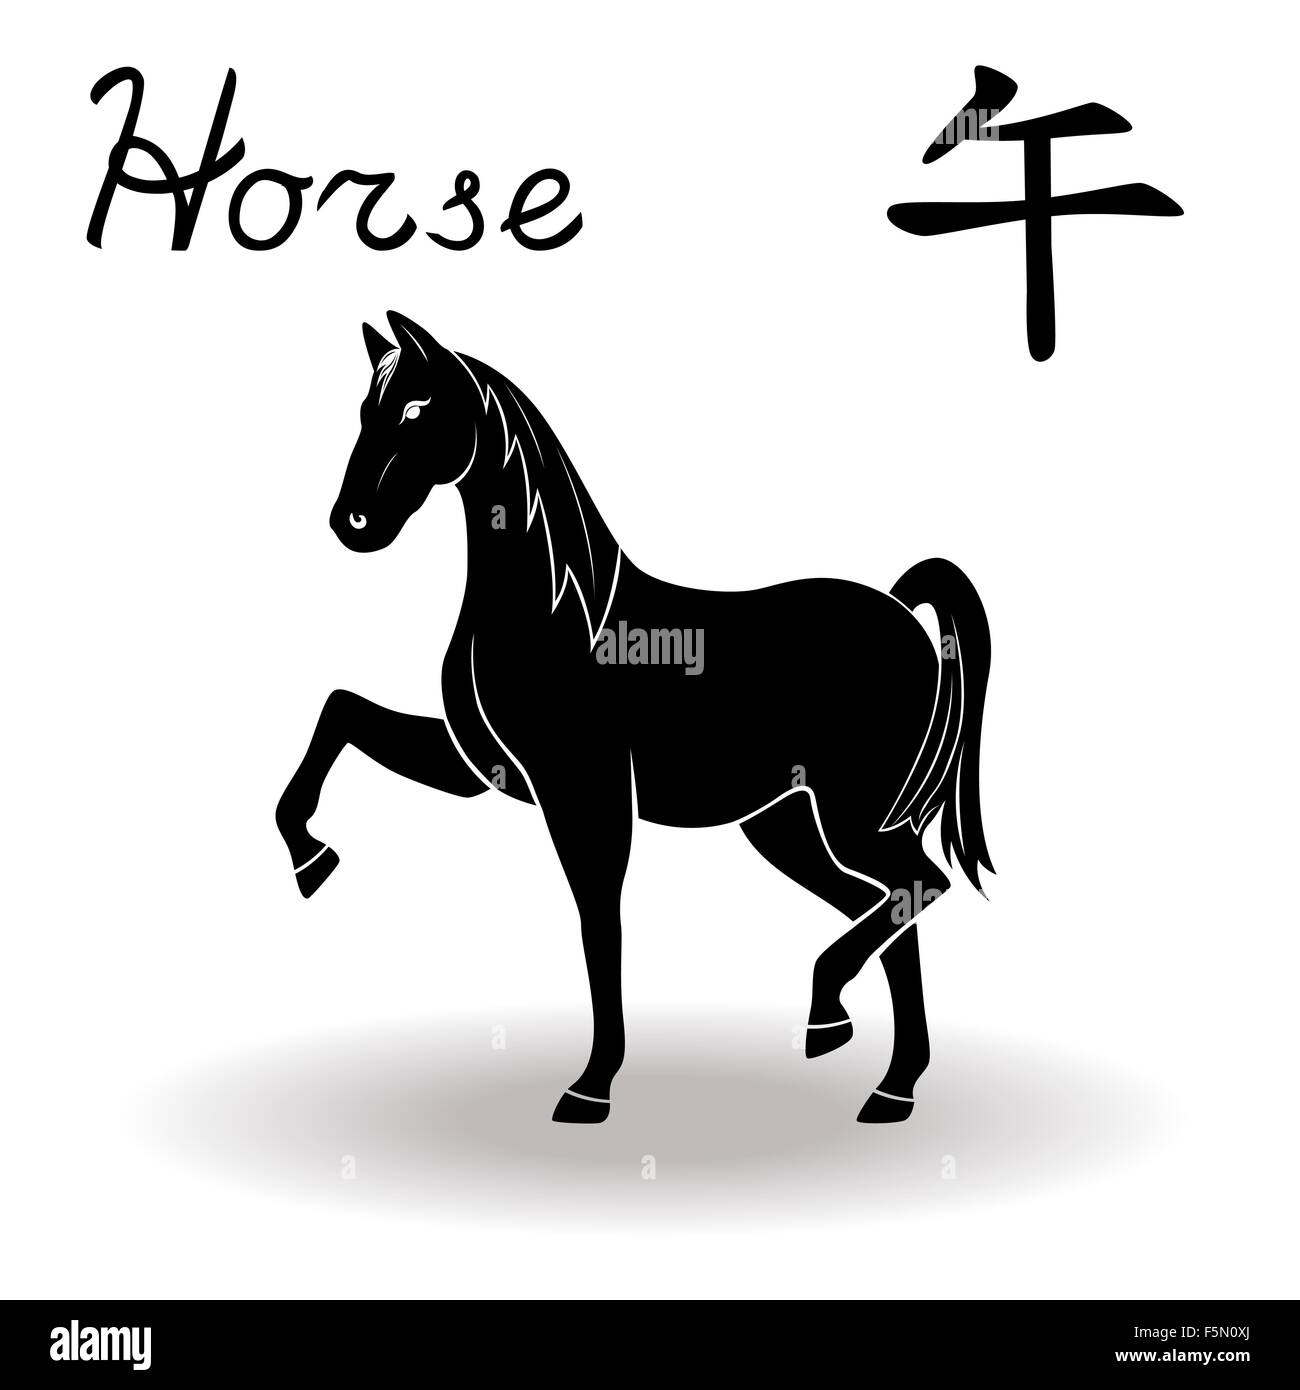 Signe zodiacal chinois Cheval, élément fixe le Feu, symbole de la nouvelle année sur le calendrier chinois, hand drawn vector black stencil isola Illustration de Vecteur